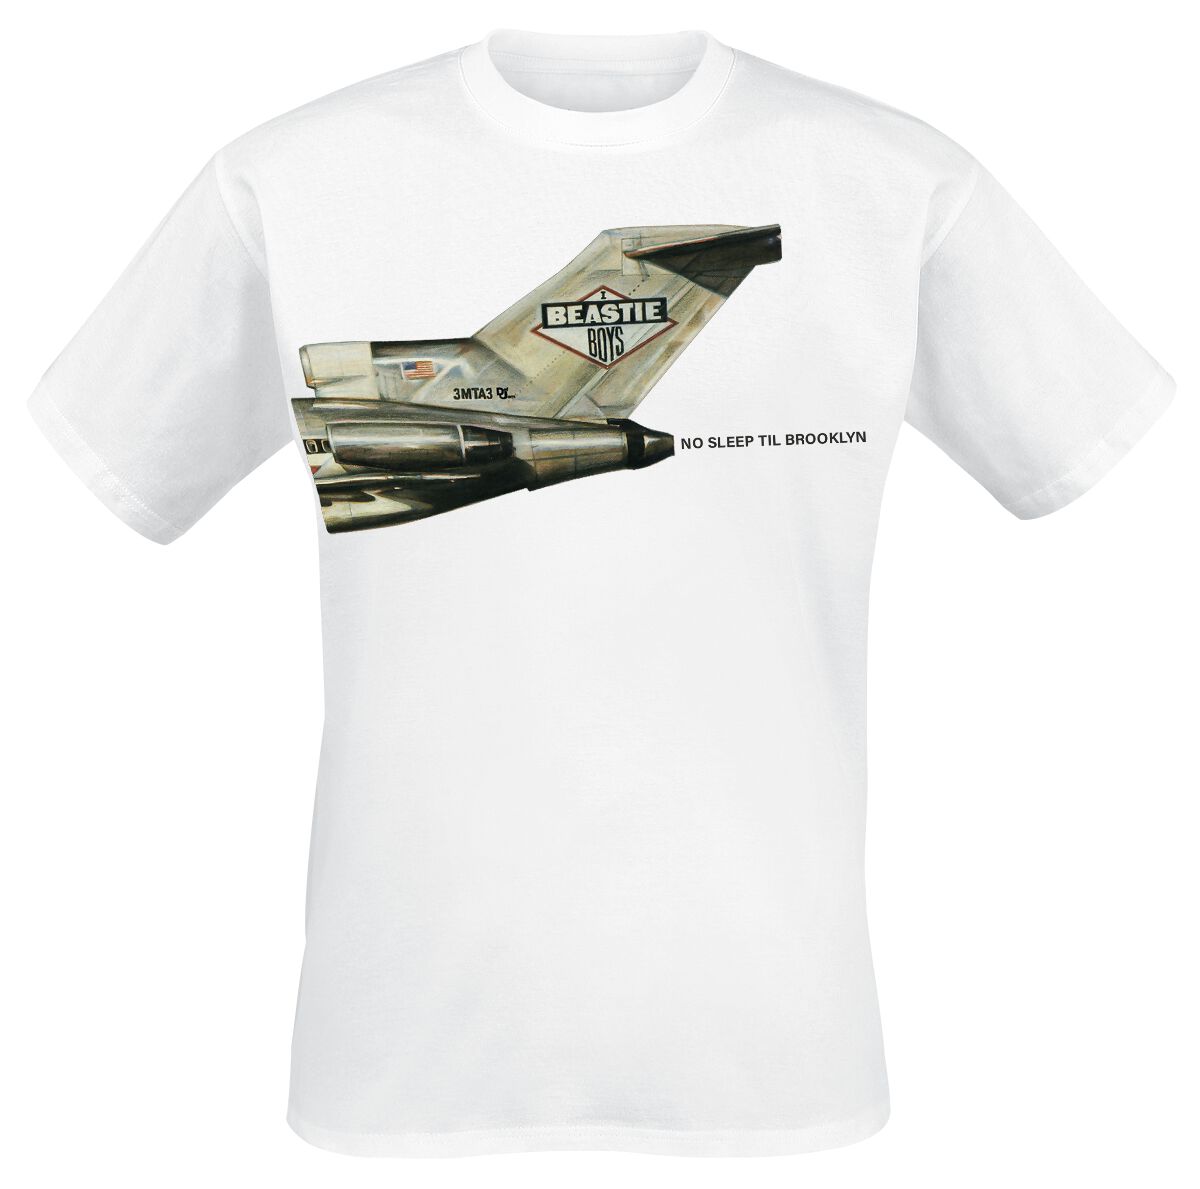 Beastie Boys T-Shirt - No Sleep Til Brooklyn Plane - S bis 3XL - für Männer - Größe 3XL - weiß  - Lizenziertes Merchandise!